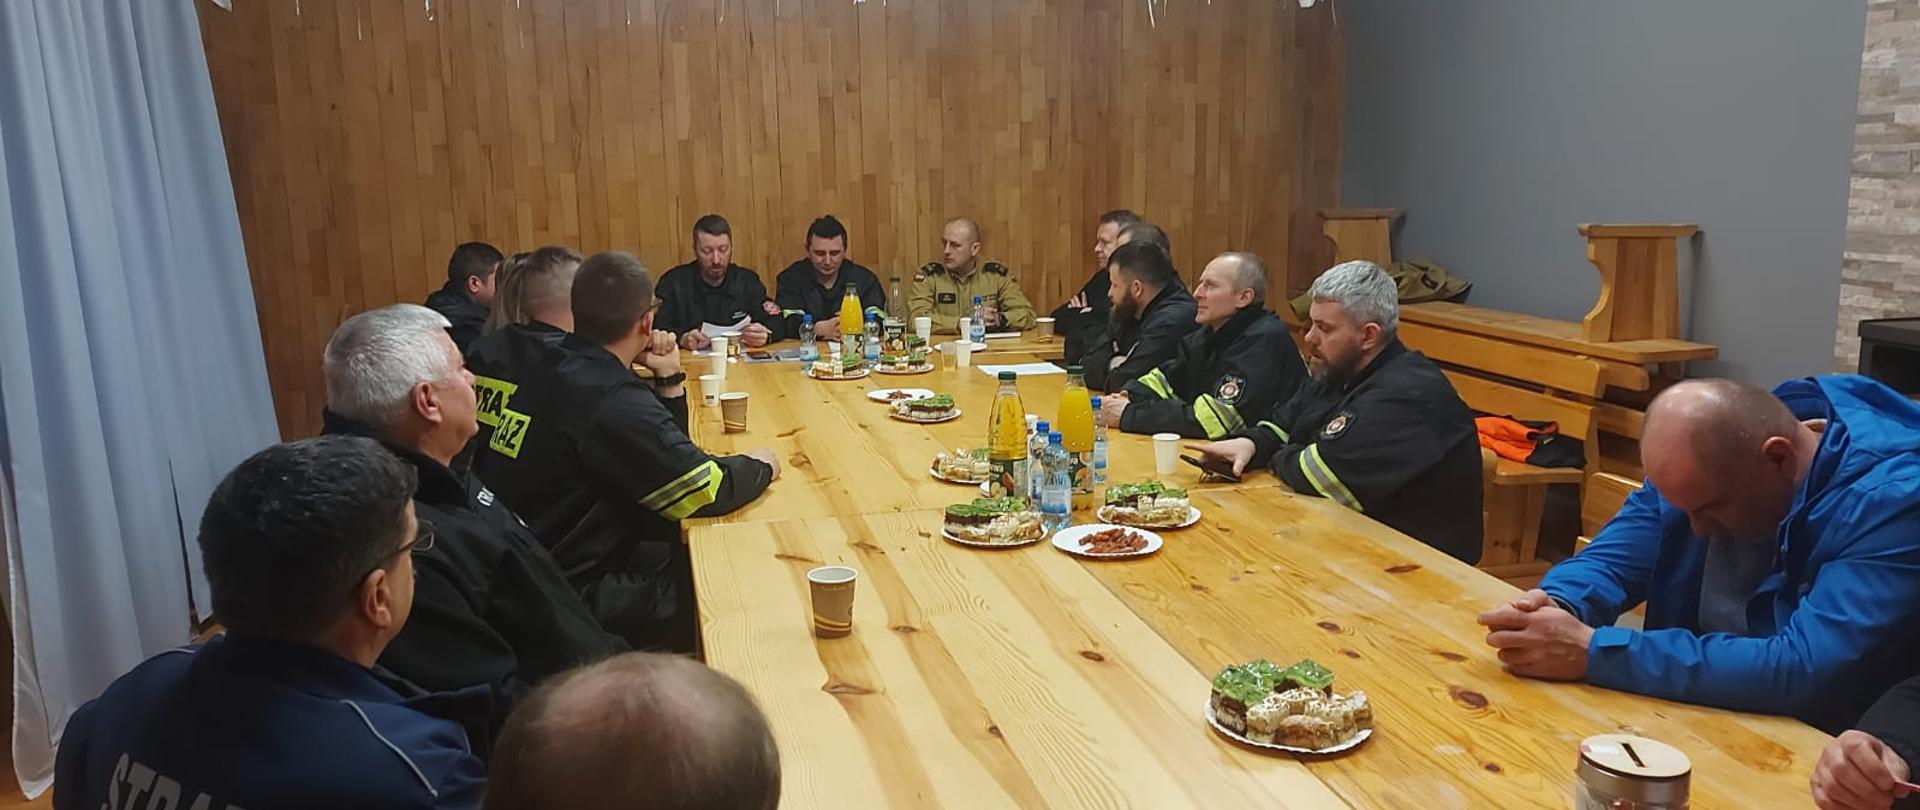 Na zdjęciu widać strażaków OSP KSRG z Wojtkowej oraz komendanta powiatowego PSP z Ustrzyk Dolnych. Wszyscy siedzą przy stolena którym są napoje i przekąski. Zdjęcie wykonane w środku pomieszczenia.